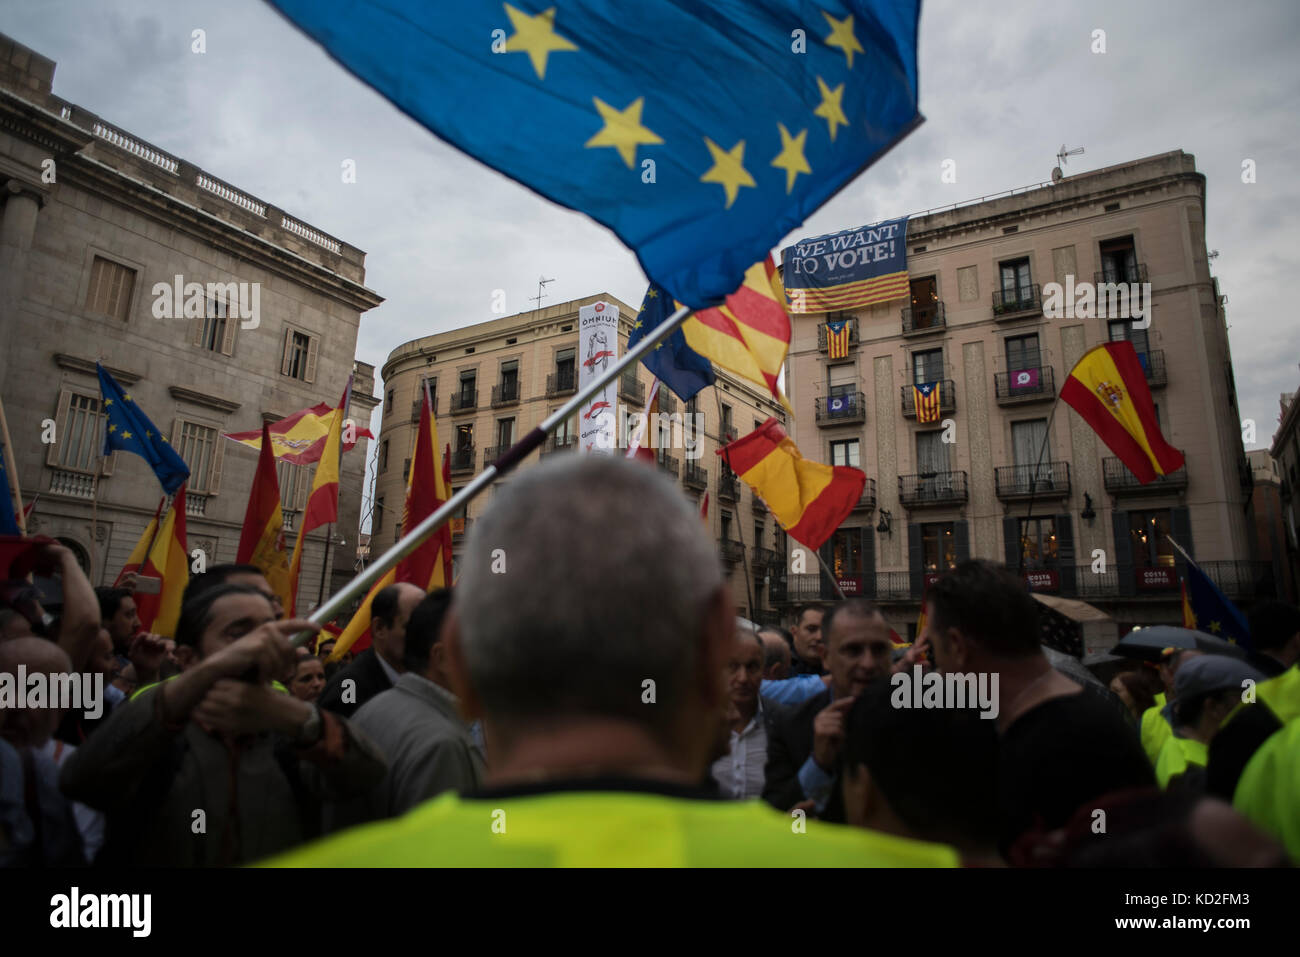 Anti-concentration dans l'indépendance la place Sant Jaume, Barcelone. crédit : alamy / carles desfilis Banque D'Images